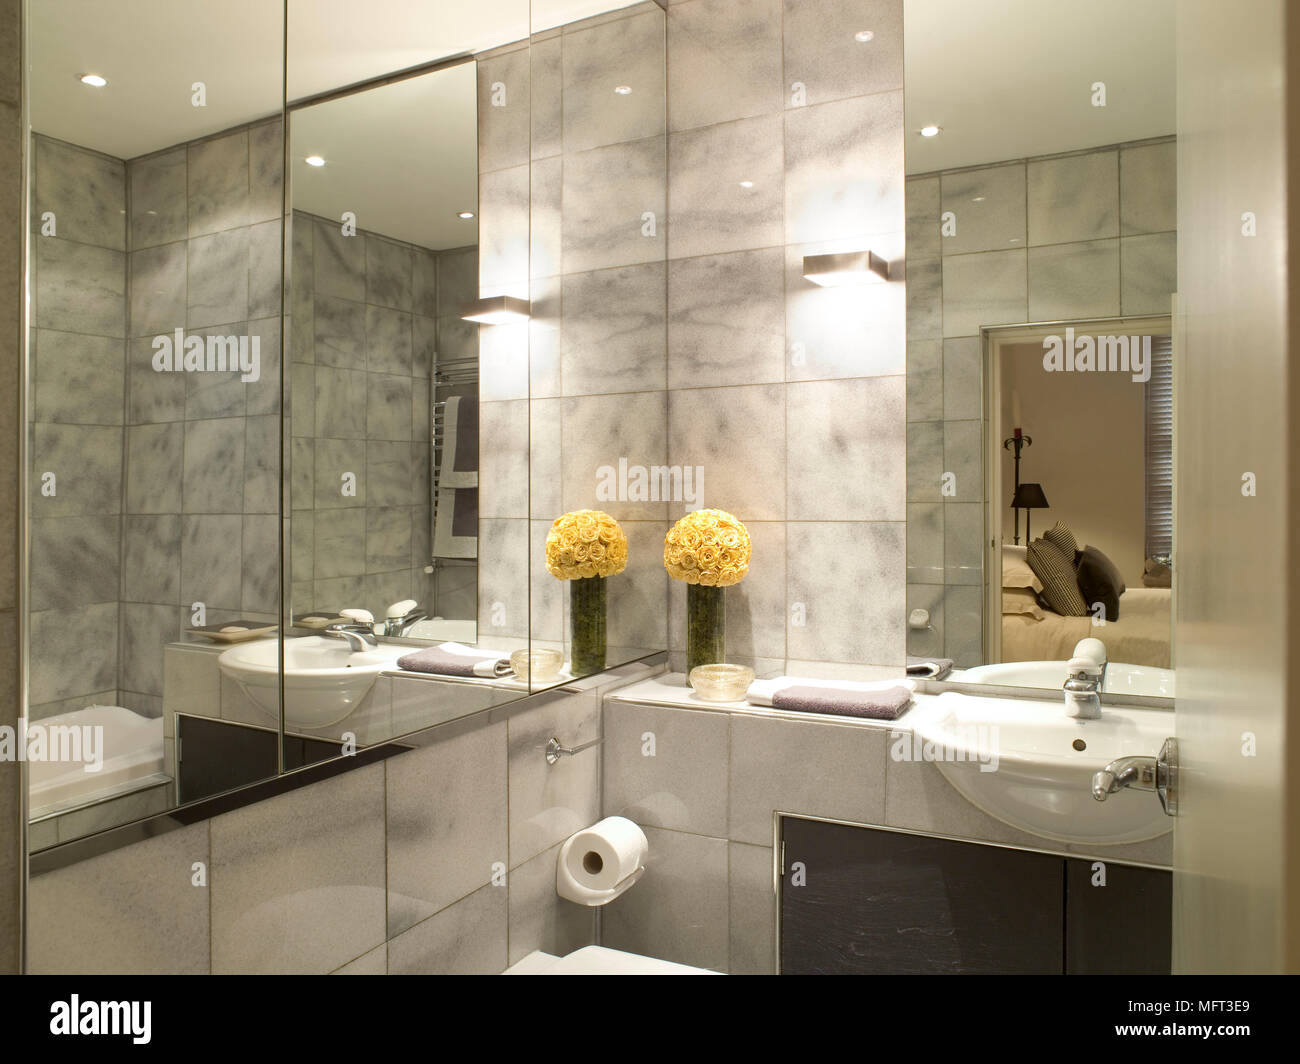 Baño moderno lavabo mosaico detalle establecido en la unidad las paredes de  espejo interiores baños frescos colores neutros hunde Fotografía de stock -  Alamy